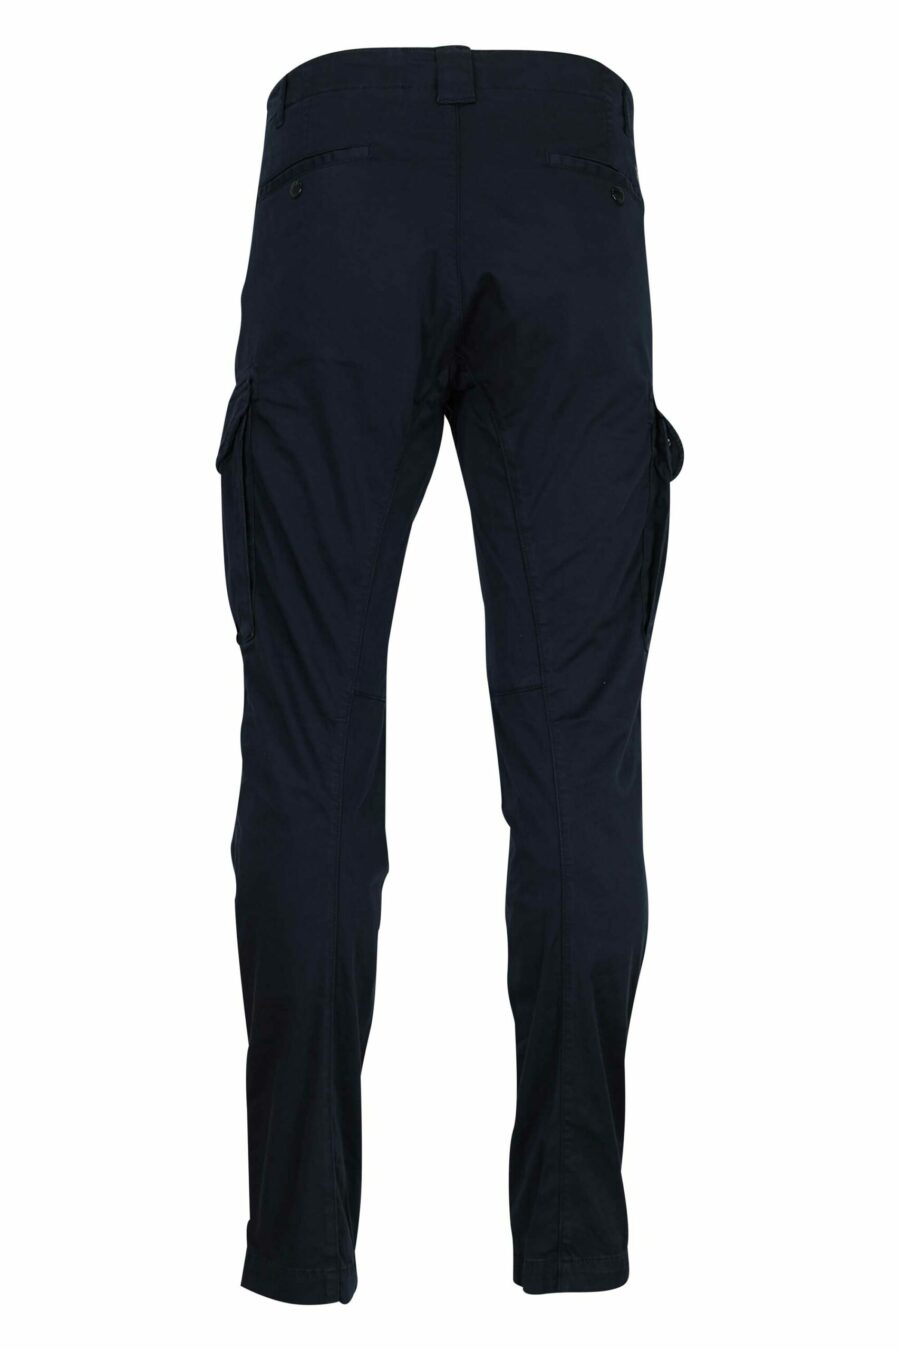 Pantalón azul oscuro estilo cargo con minilogo lente - 7620943717624 1 scaled